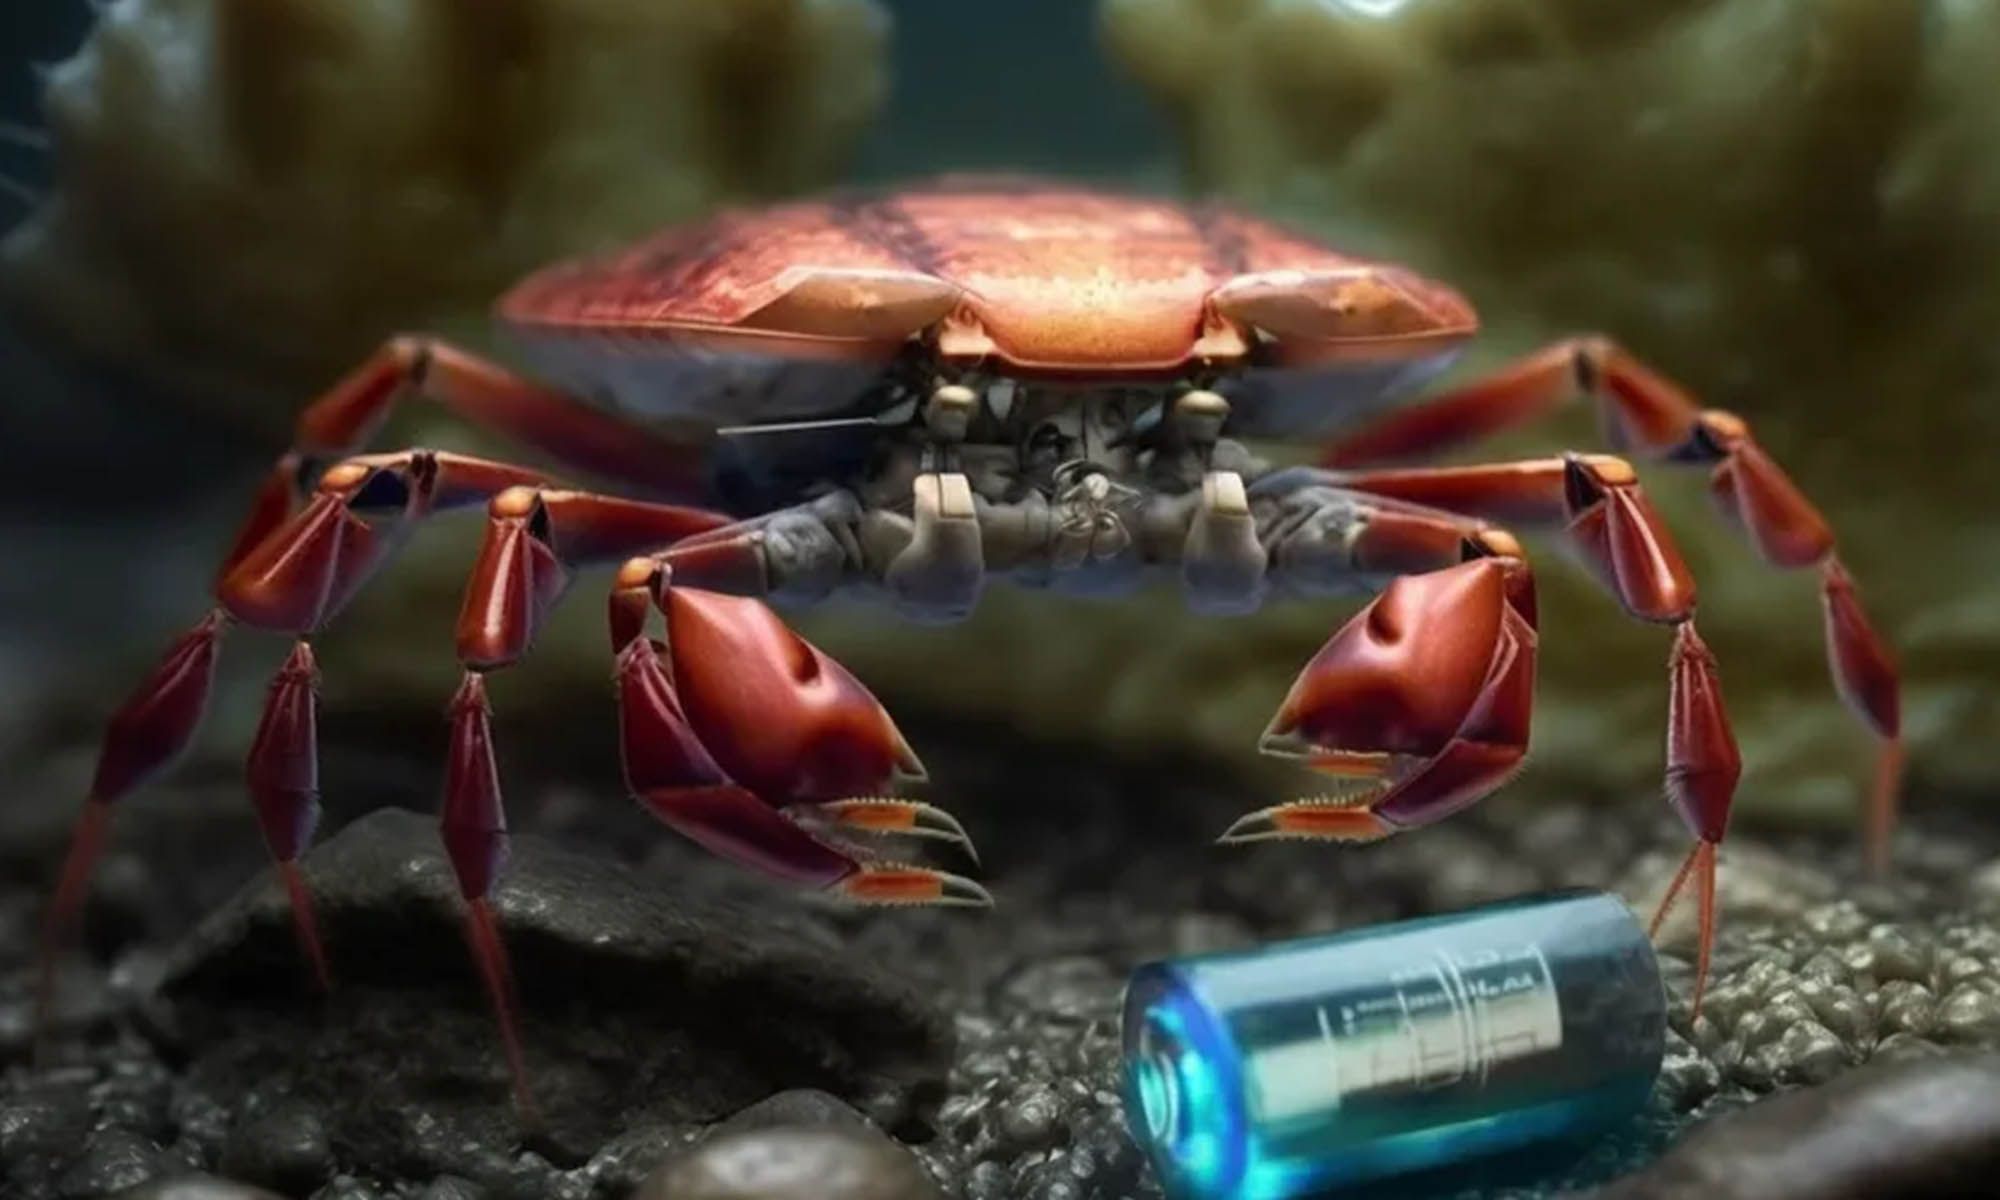 Los caparazones de los cangrejos han servido para crear el ánodo de una batería de sodio experimental.